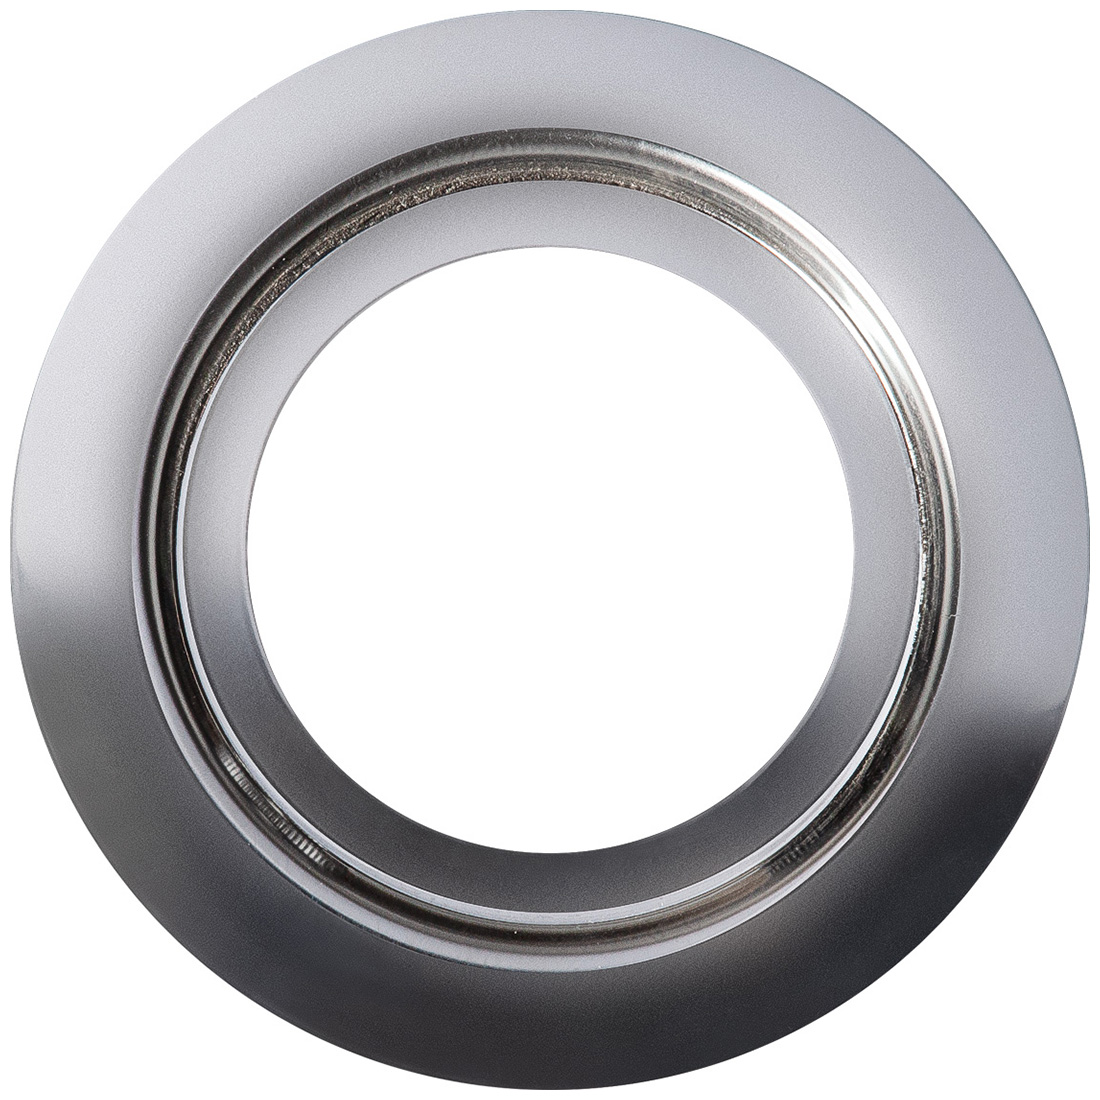 Кольцо переходник для измельчителя Bort Ring 140, 93412635 кольцо переходник для измельчителя bort ring 160 93412642